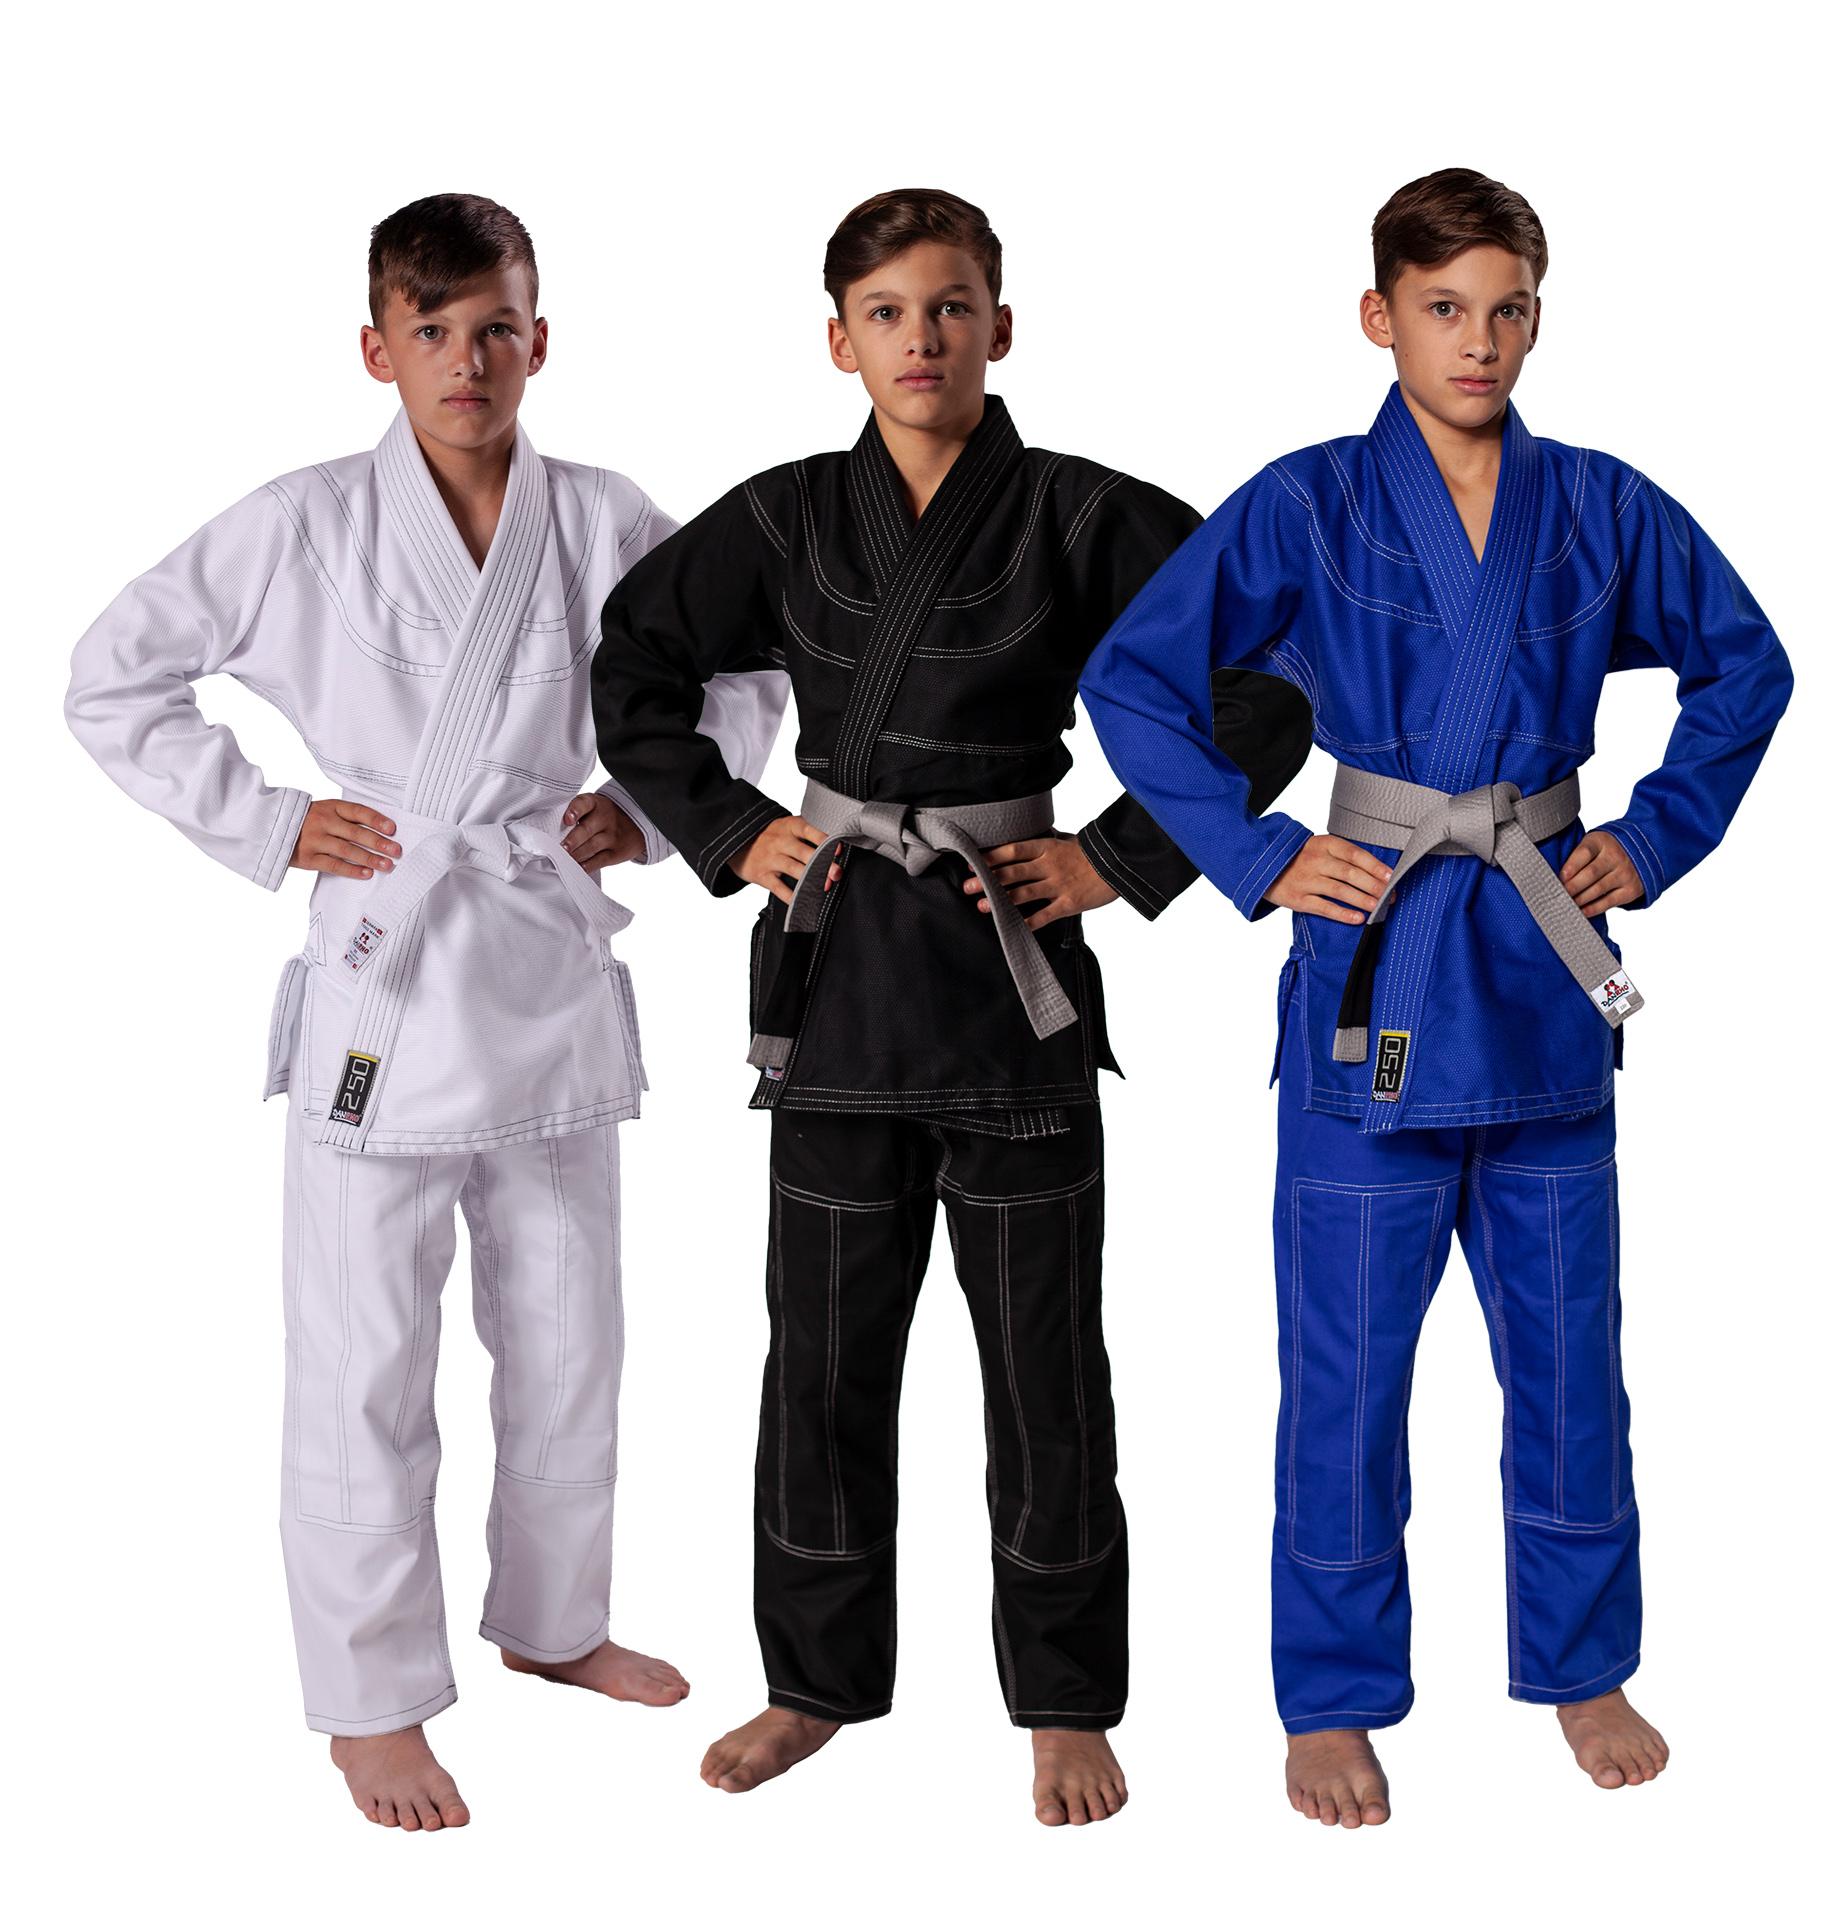 DANRHO Junioren Brazilian Jiu Jitsu Anzug 250 g, in 3 Farben